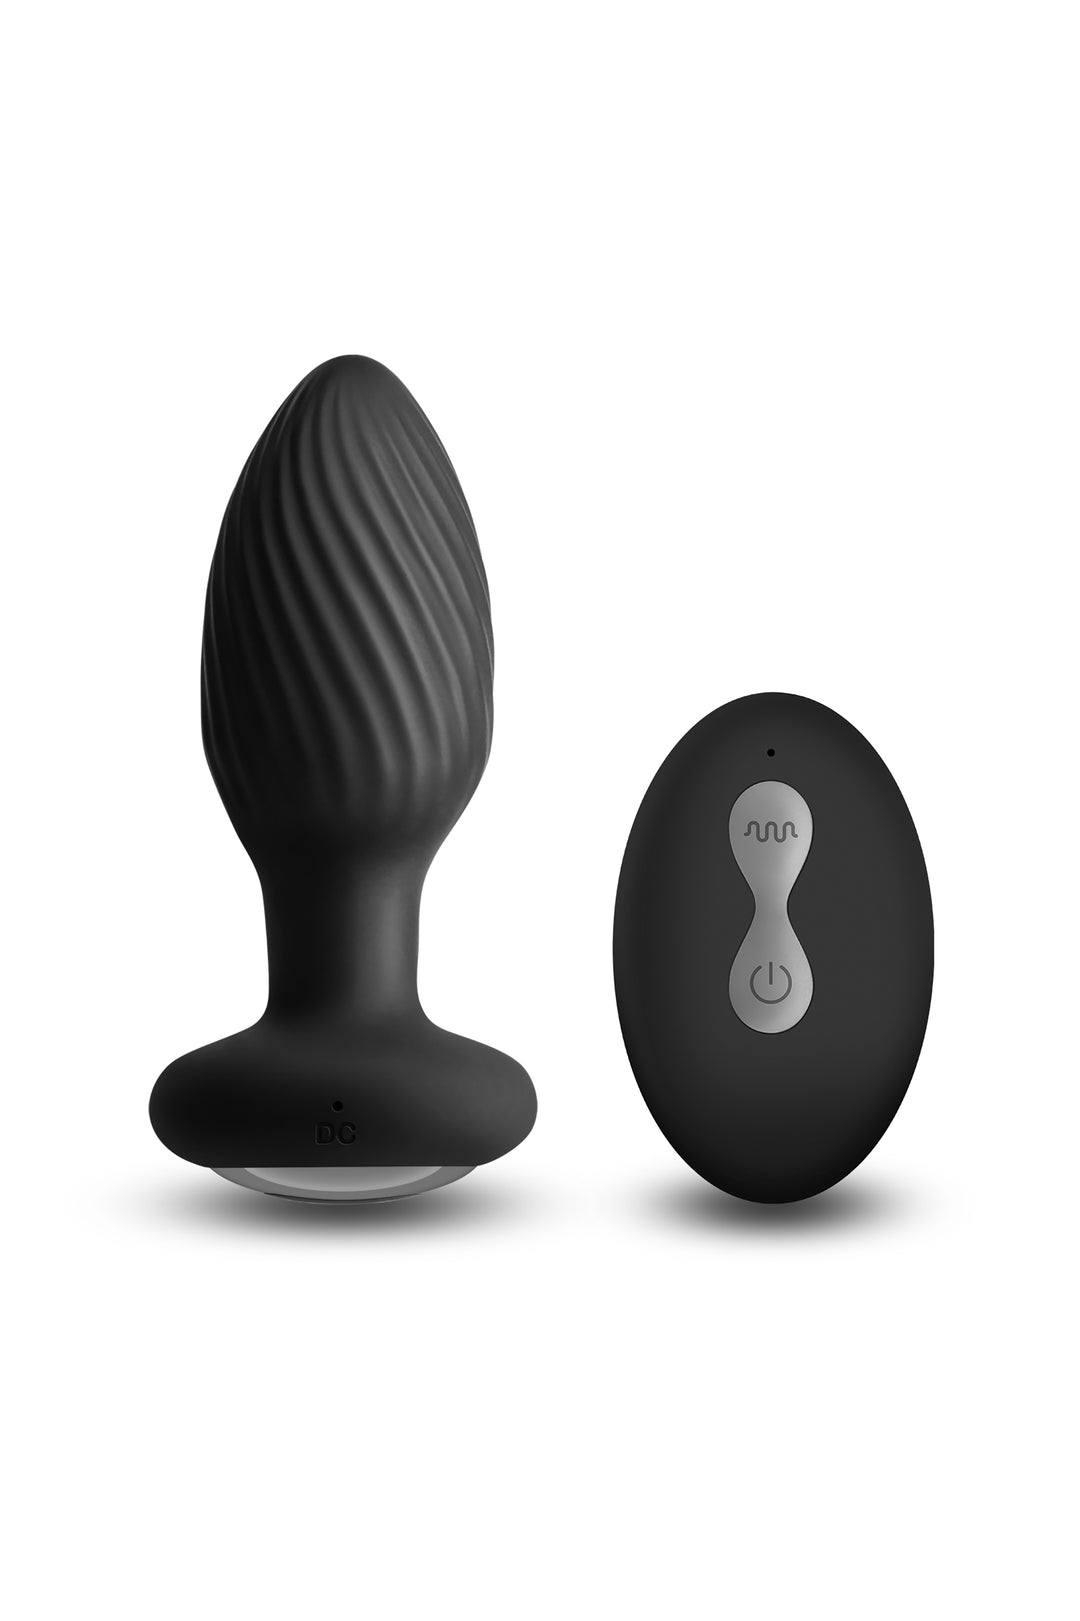 Plug Anale Realizzato in Silicone Medicale  Sex Toys per Lui e Lei  Questo Plug è Dotato di 10 Vibrazioni